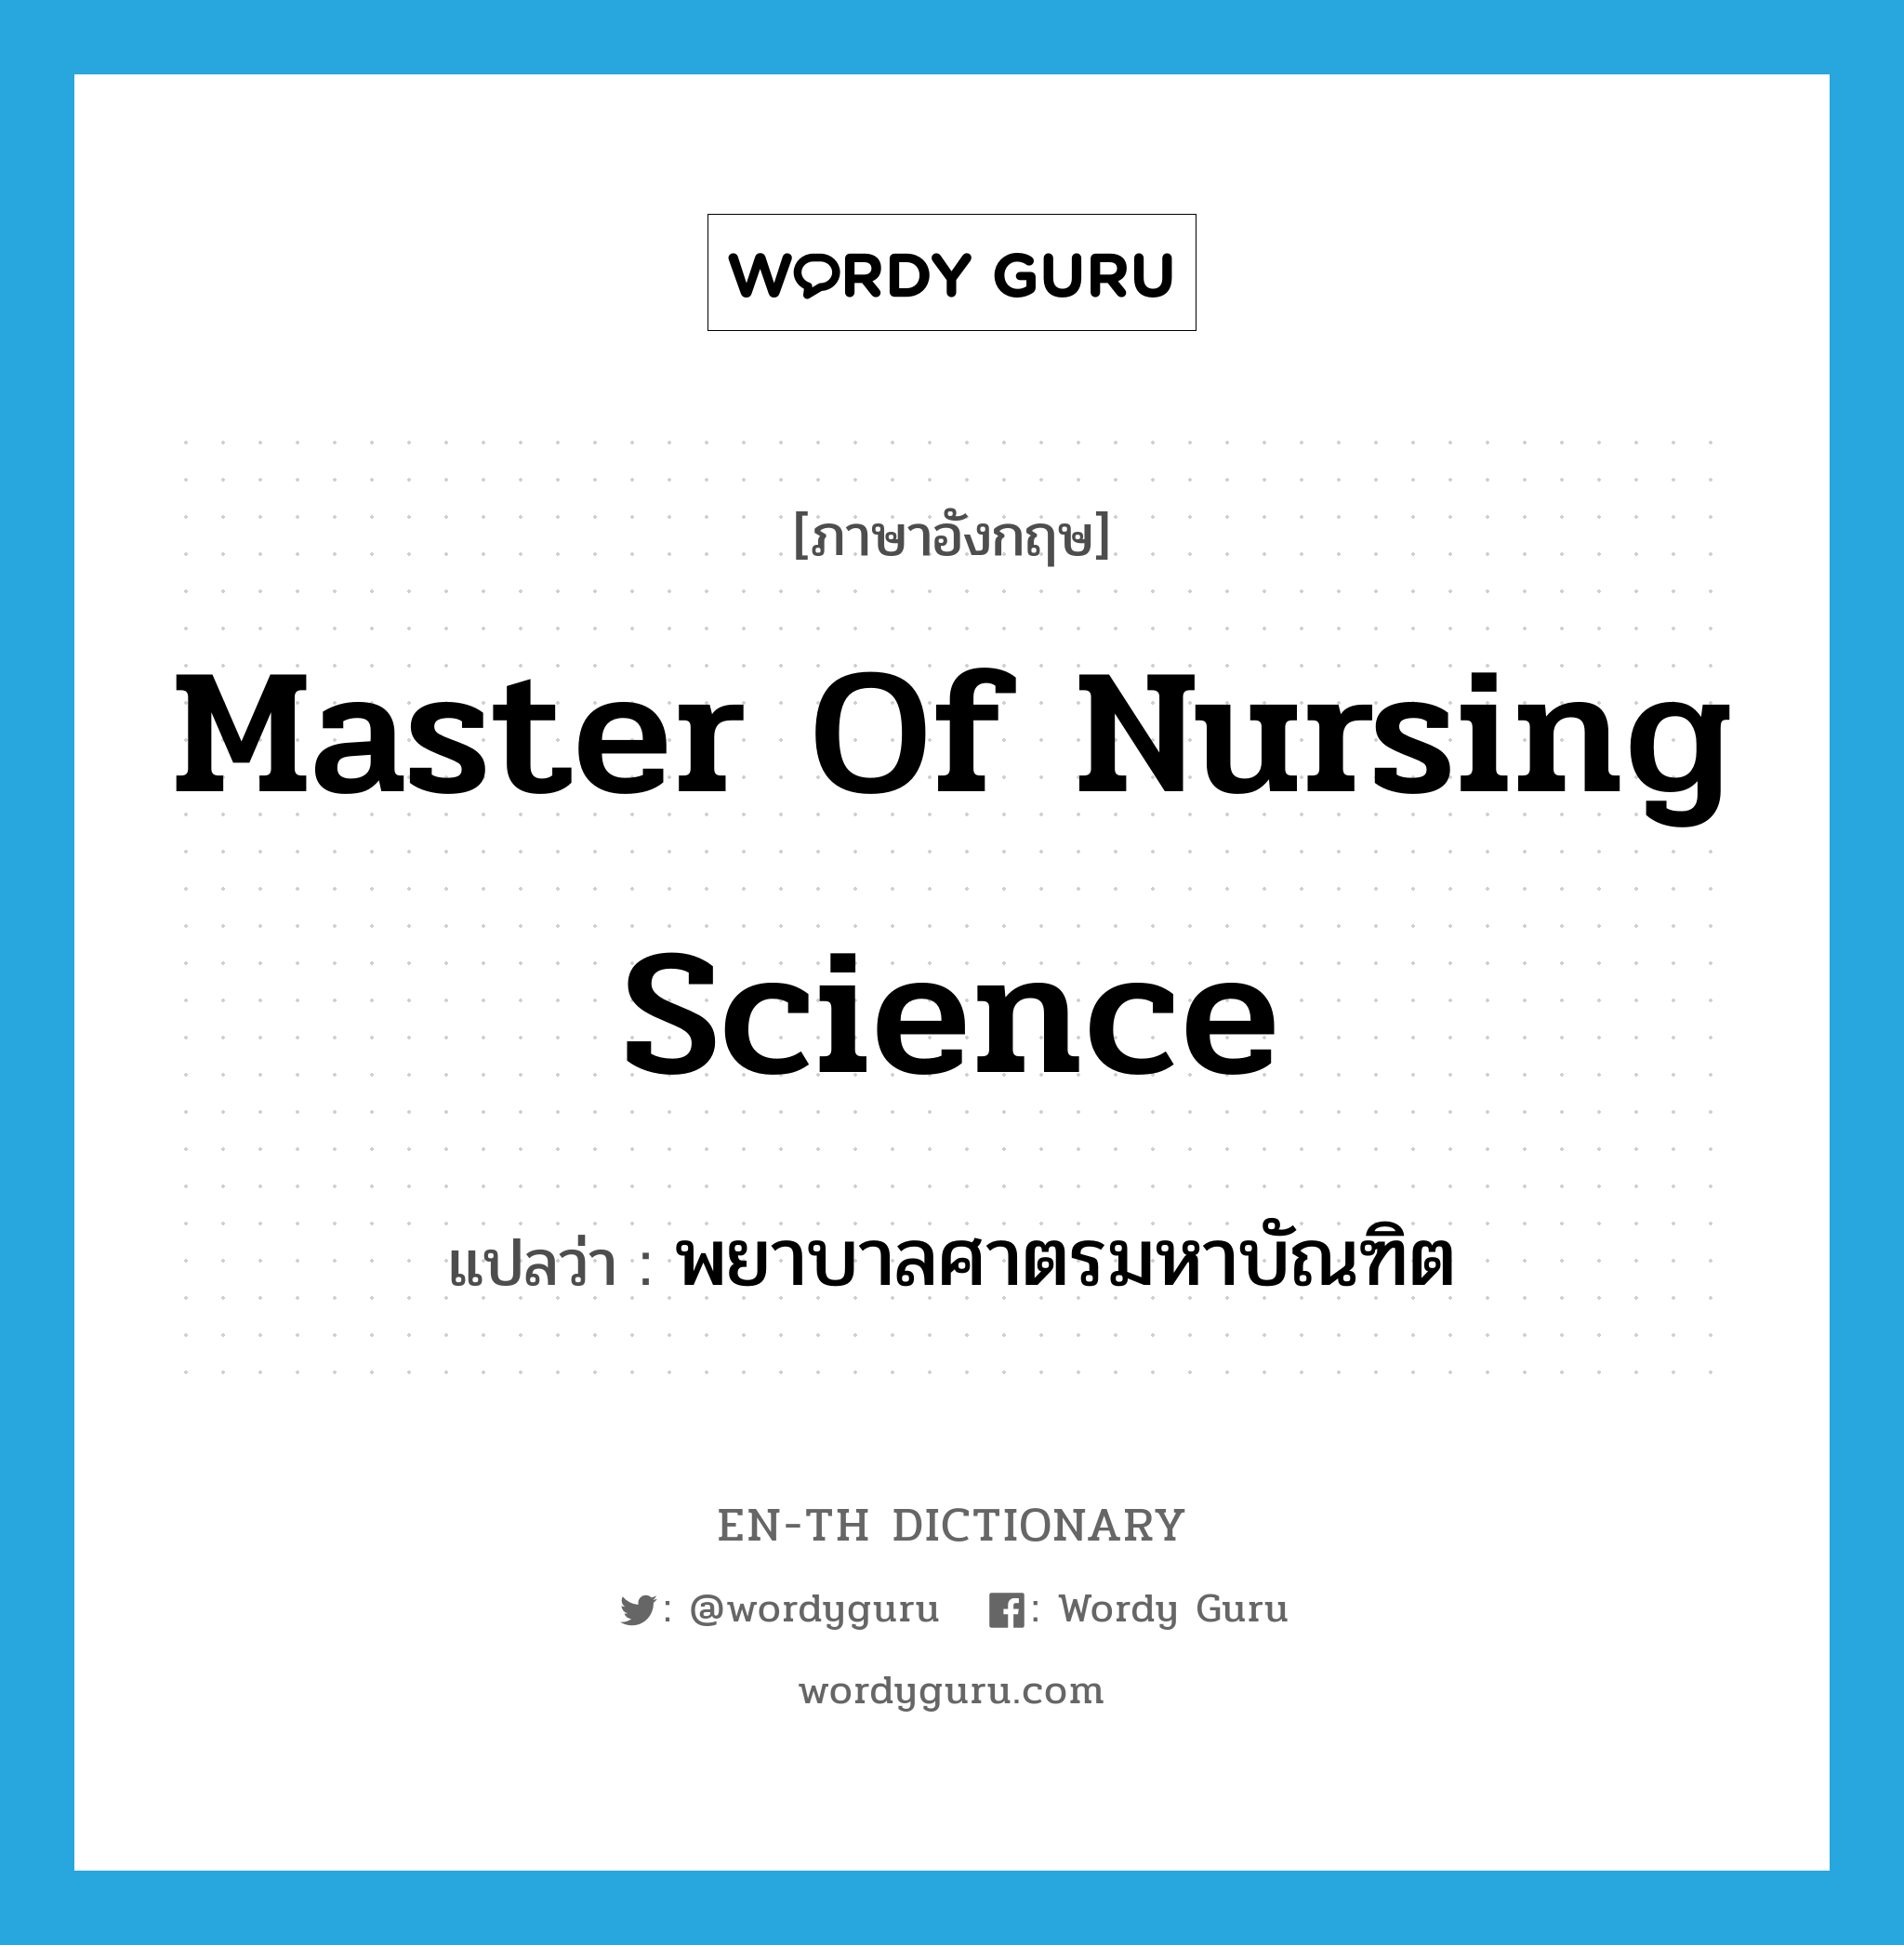 พยาบาลศาตรมหาบัณฑิต ภาษาอังกฤษ?, คำศัพท์ภาษาอังกฤษ พยาบาลศาตรมหาบัณฑิต แปลว่า Master of Nursing Science ประเภท N หมวด N